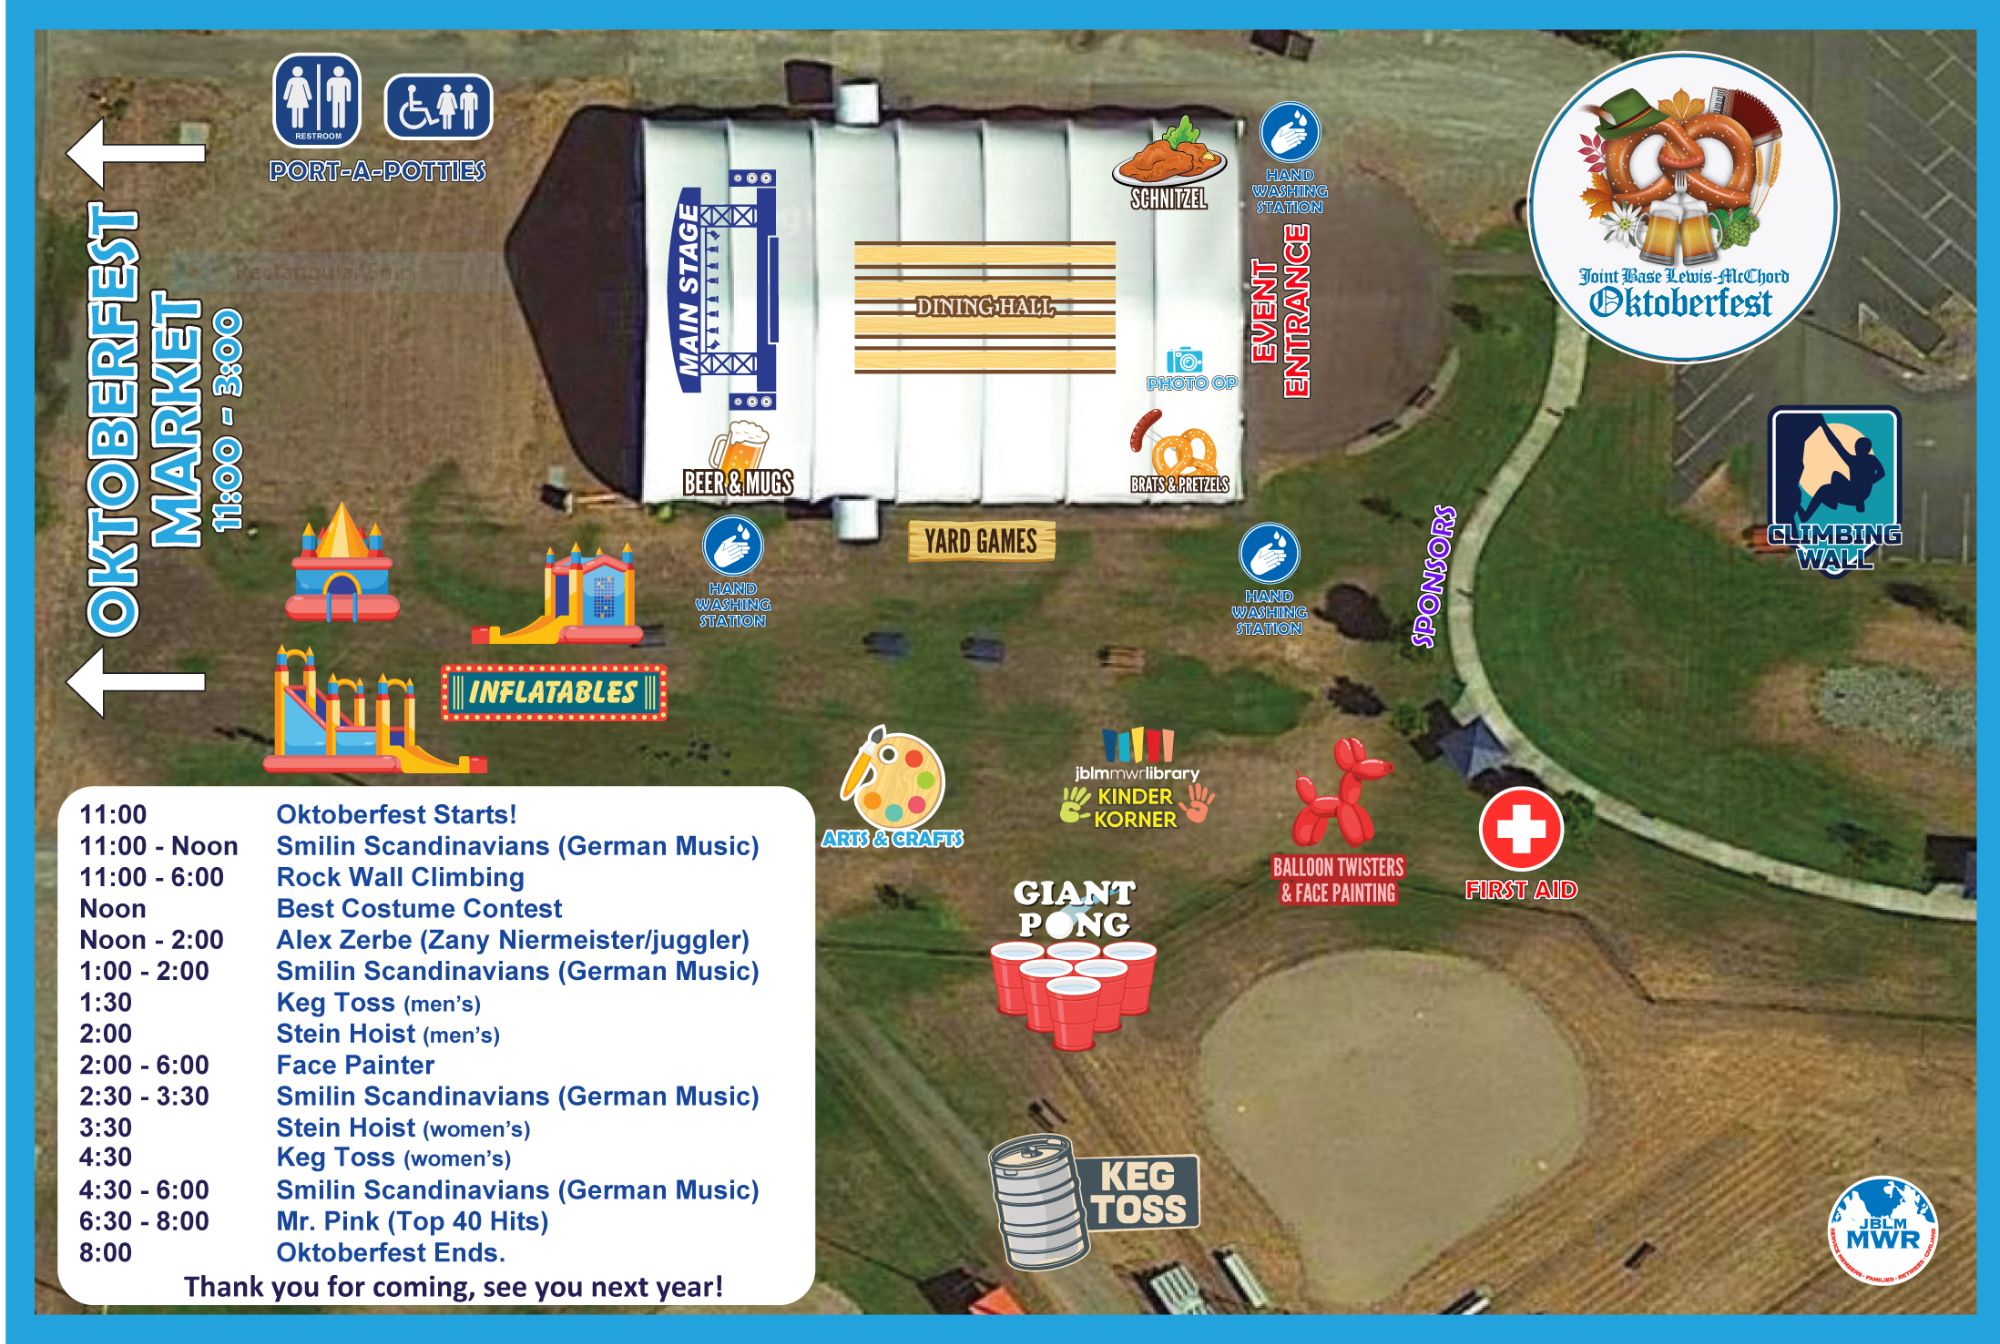 JBLM-Oktoberfest-&-Marketplace-Map-30.5x20.5-final.jpg